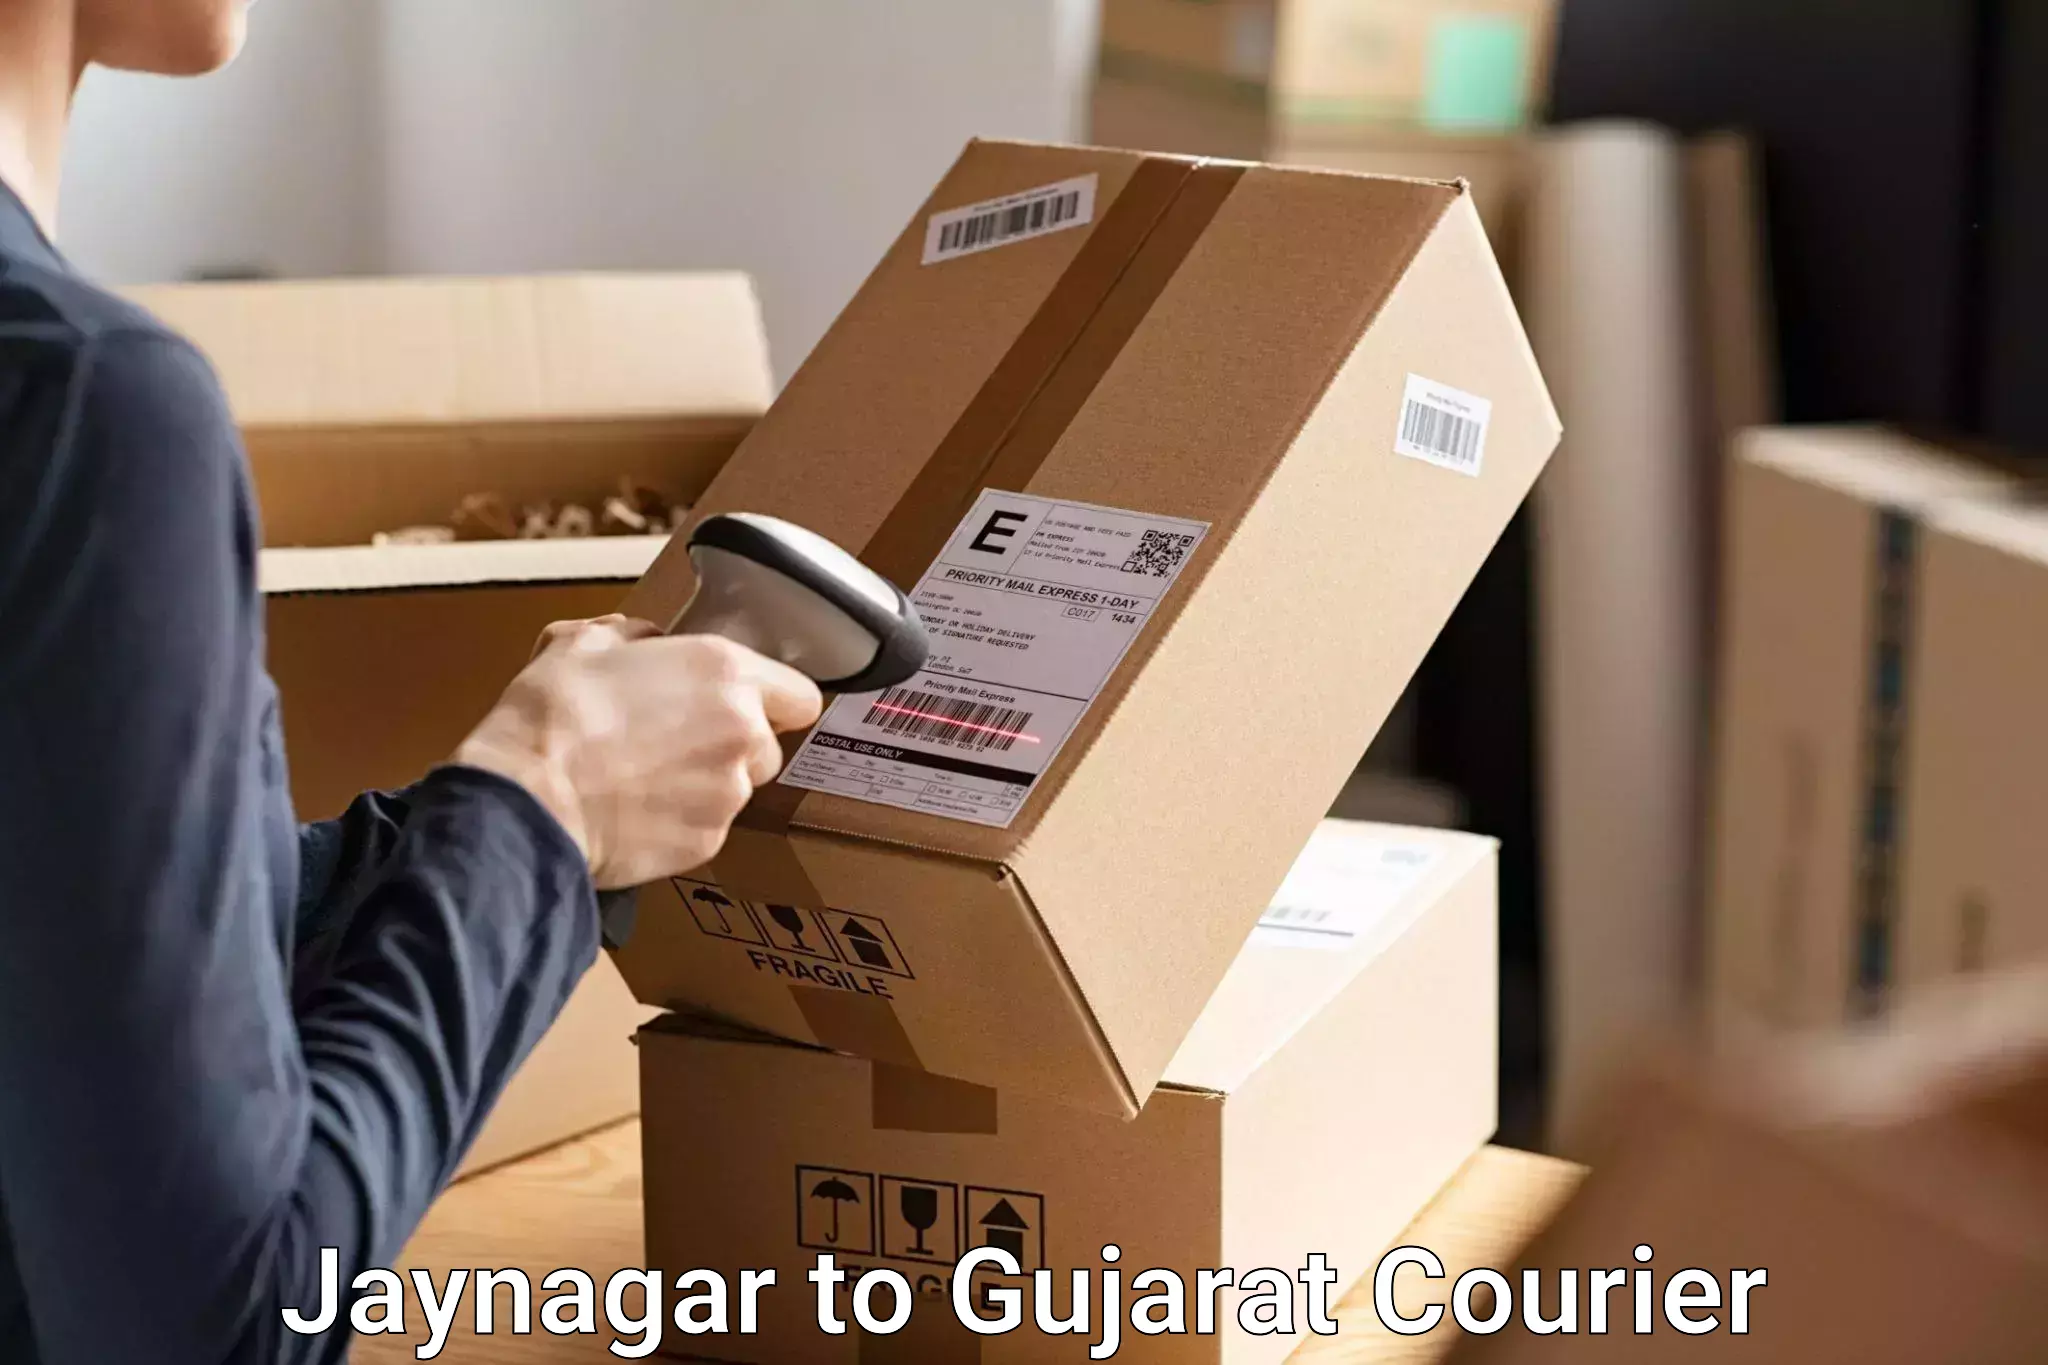 Baggage transport technology Jaynagar to Gujarat